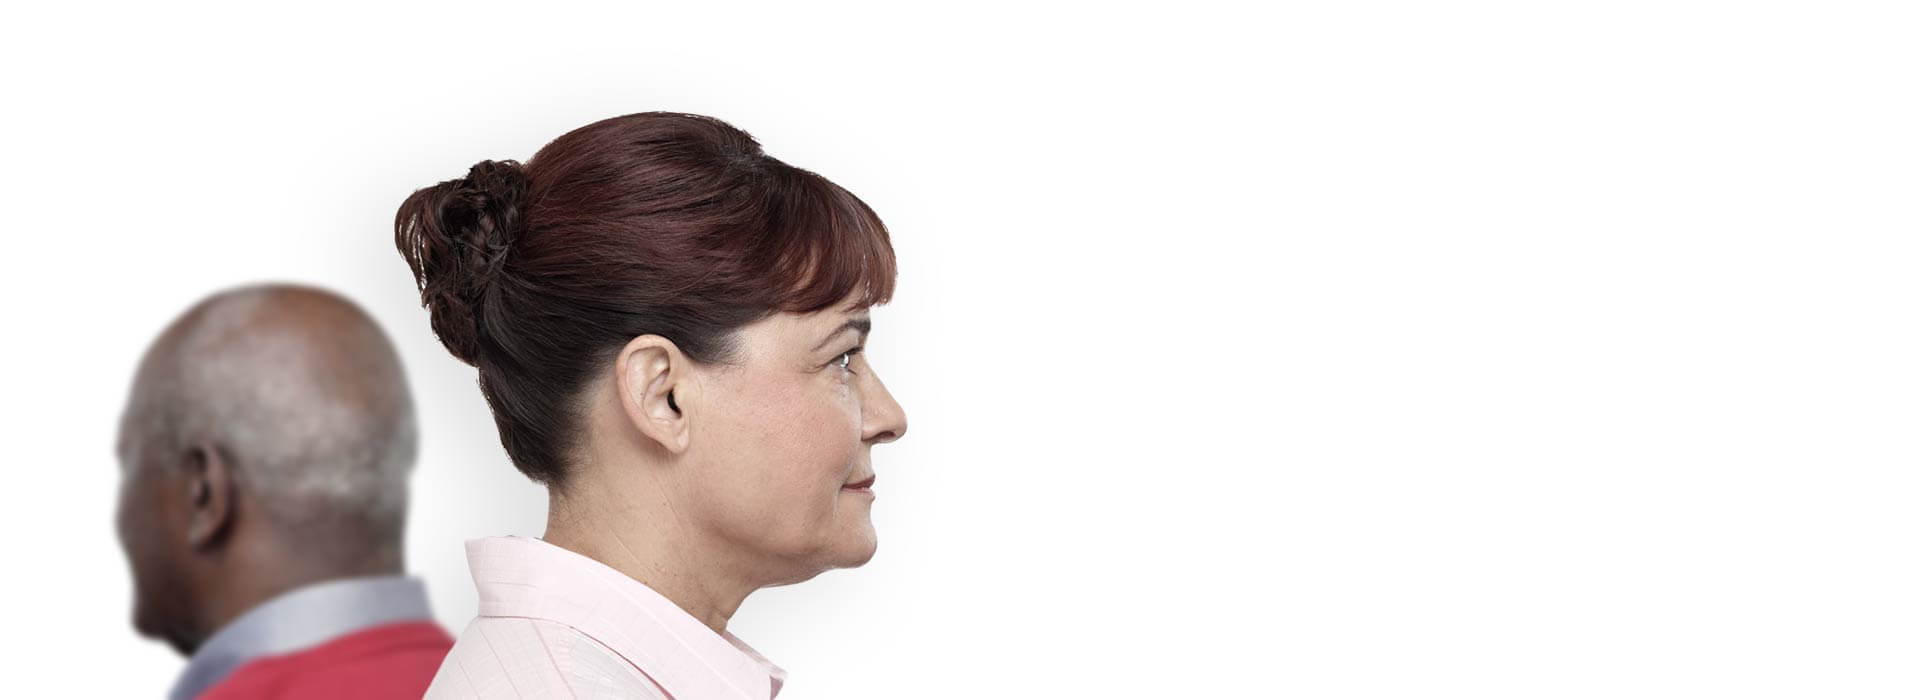 Image du profil d'une femme avec des appareils auditifs invisibles